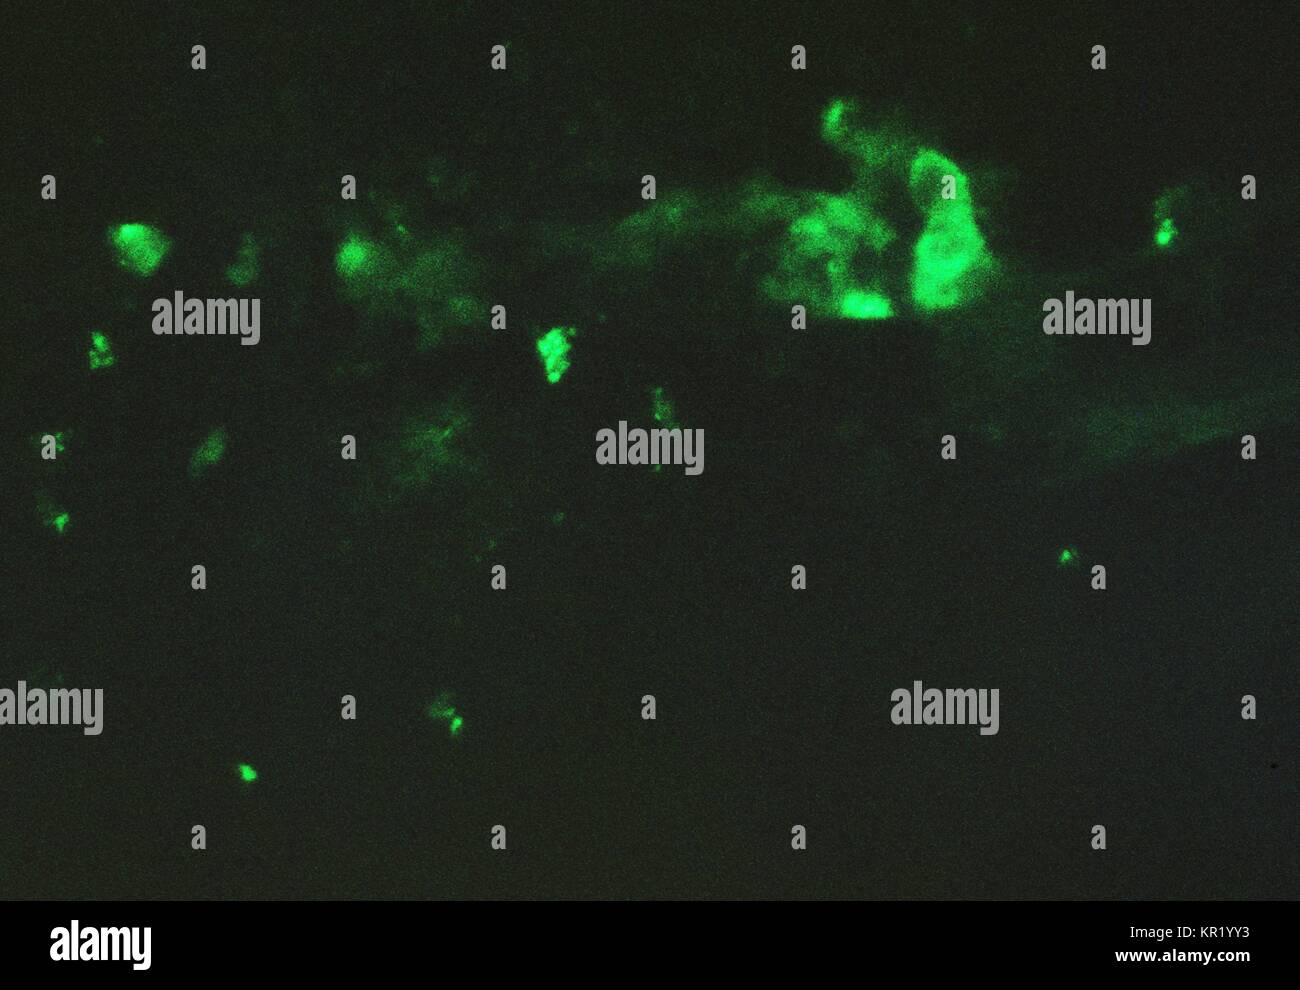 Eine photomicrograph eines Chick chorioallantoic Membrane, fluoreszierende Antikörper Färbung war nach dem pockenvirus Inokulation, 1962. Chorioallantoic membrane angesteckt mit Variola, gebeizt mit Kaninchen anti-vaccinia Konjugiere, dann mit Immunofluoreszenz-muster Mikroskopie Technik gesehen. Bild mit freundlicher Genehmigung von CDC/Dr. David Kirsh. Stockfoto